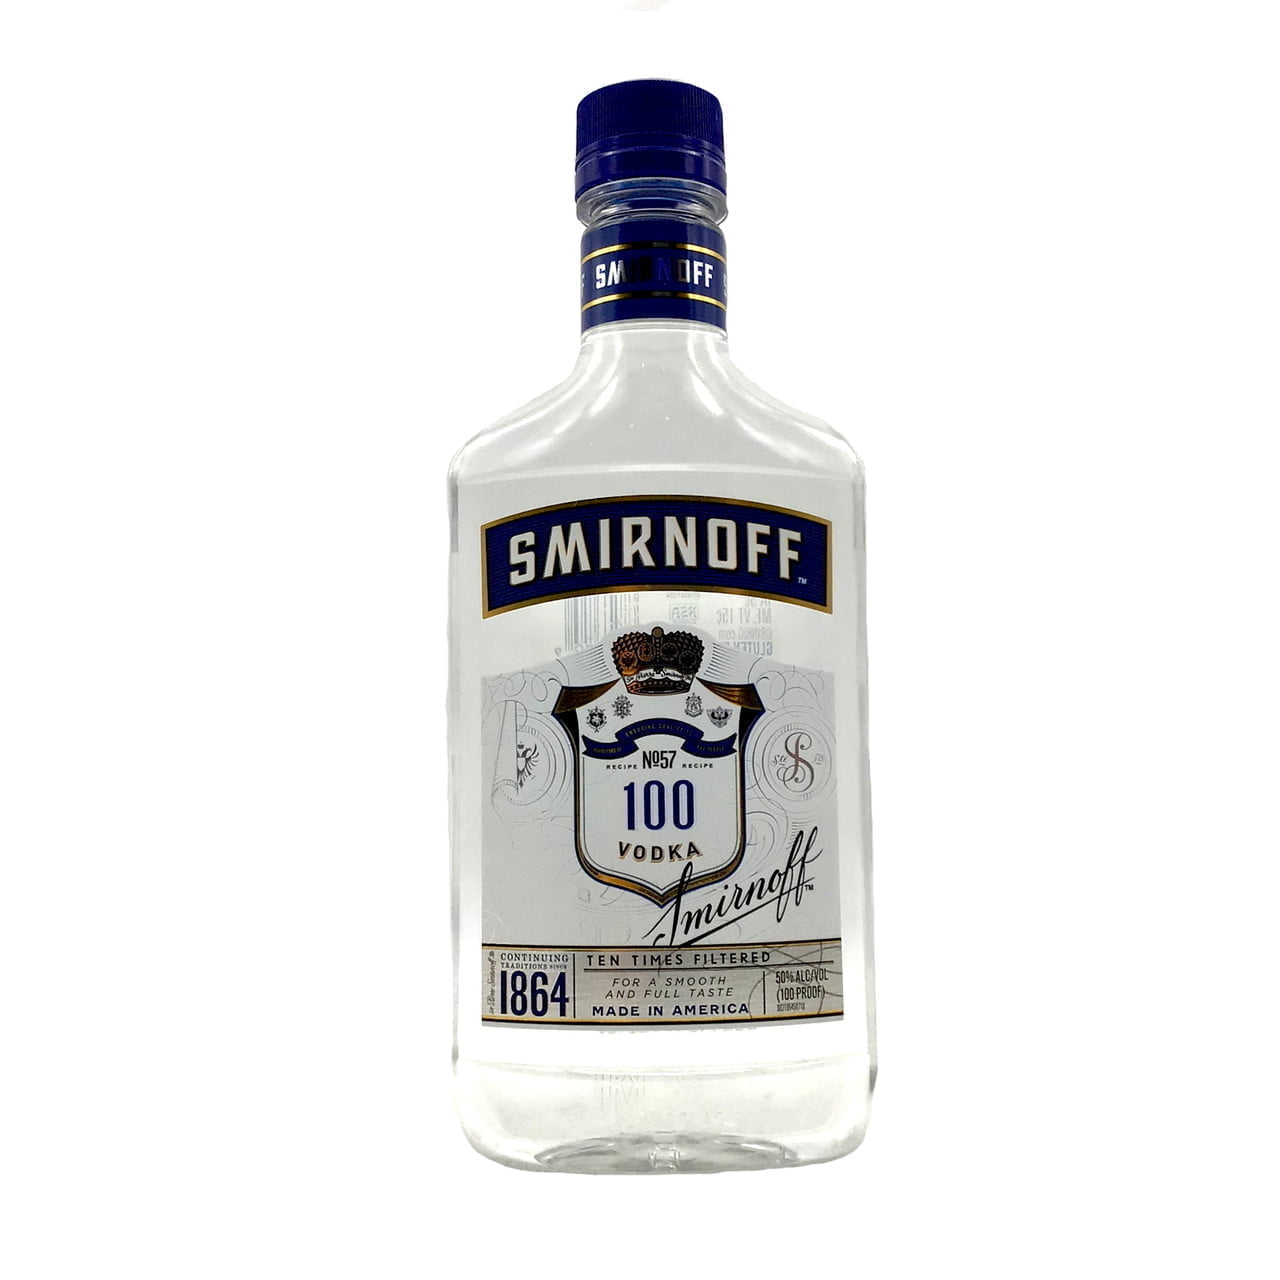 Smirnoff – 100 Vodka 375mL